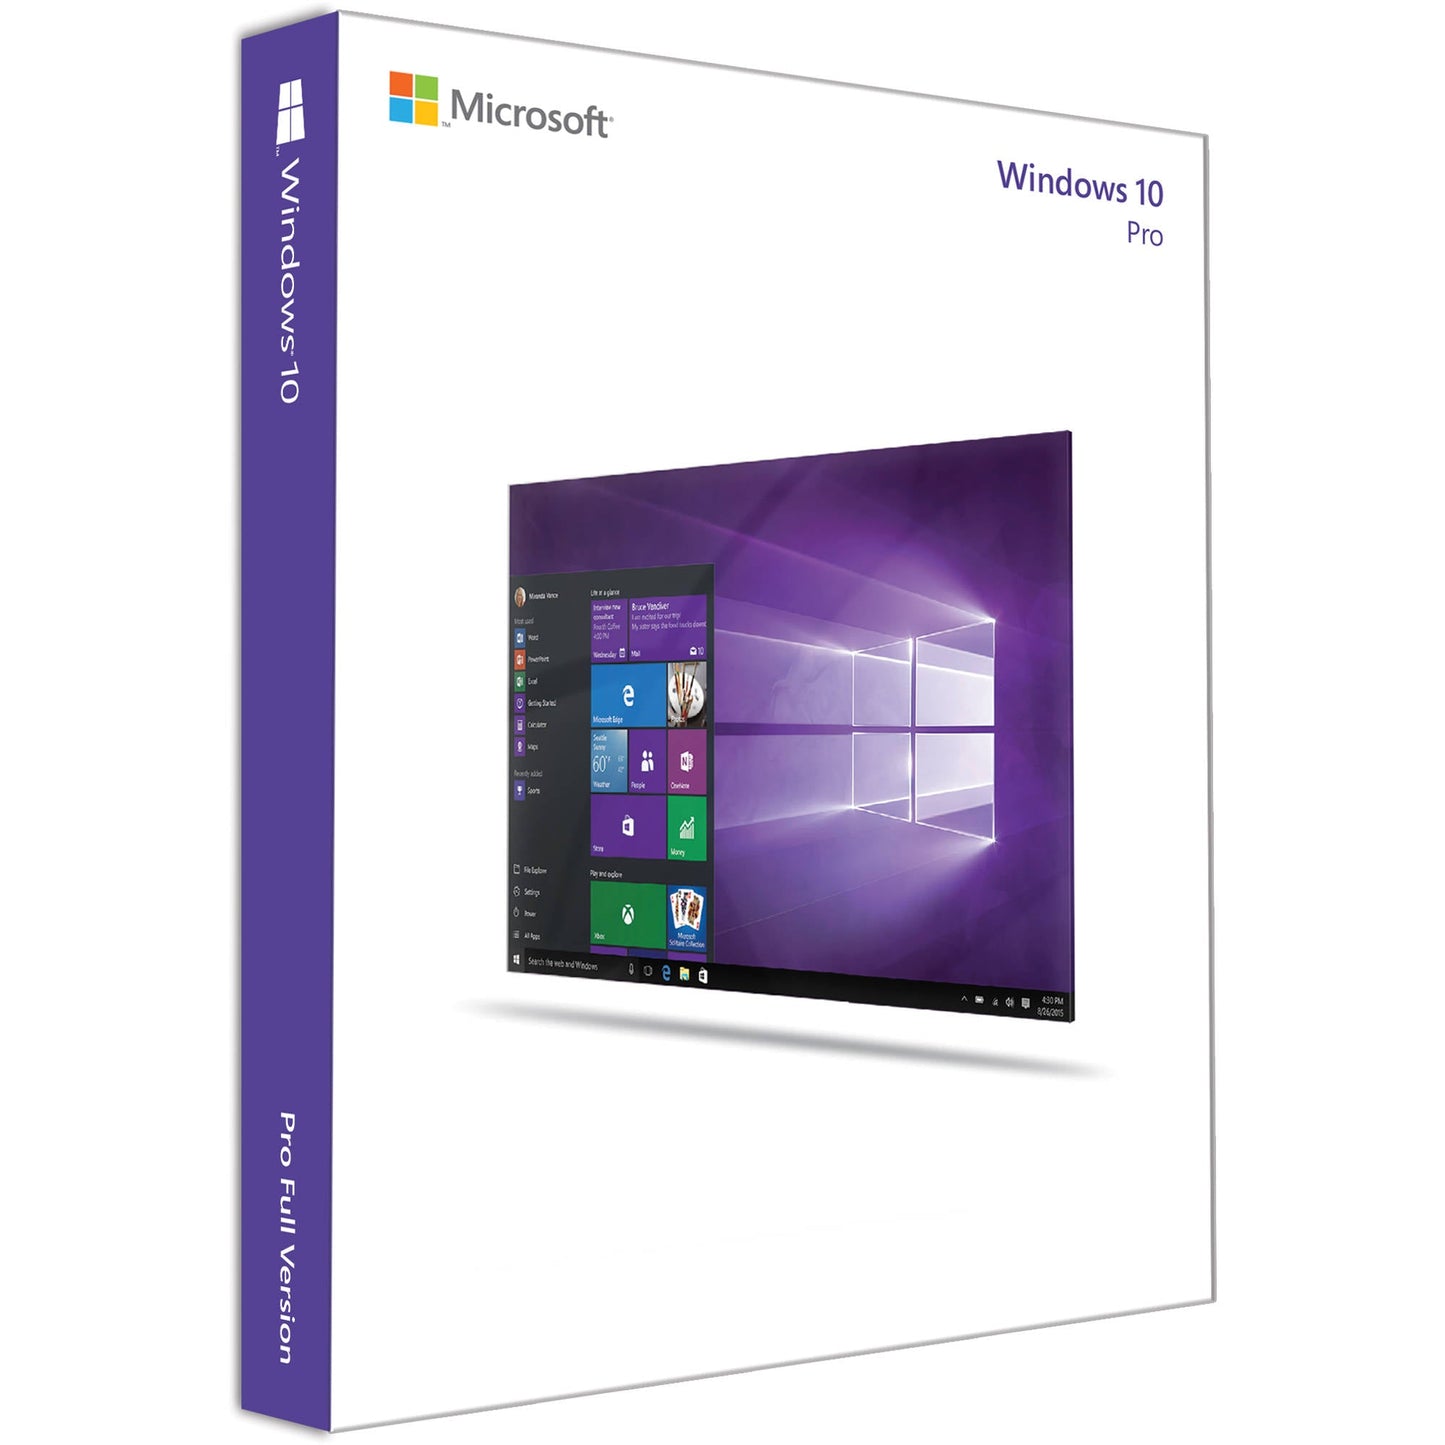 マイクロソフト Windows 10 Pro Professional  正規プロダクトキー ダウンロード版 日本語対応